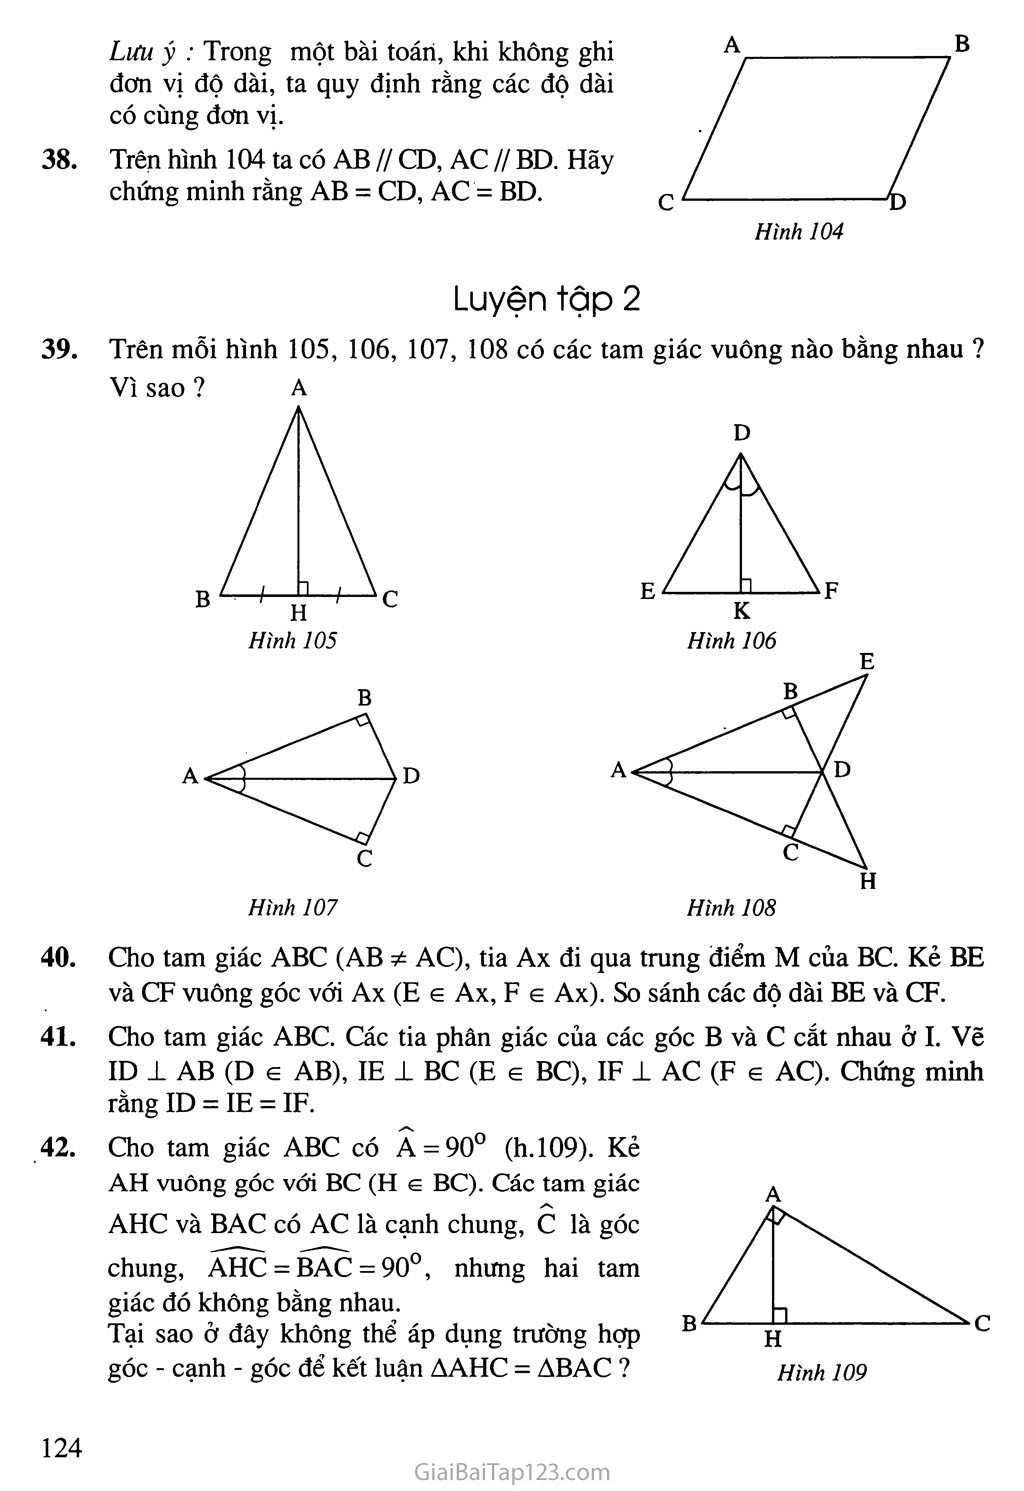 Bài 5. Trường hợp bằng nhau thứ ba của tam giác: góc - cạnh - góc (g. c. g) trang 4